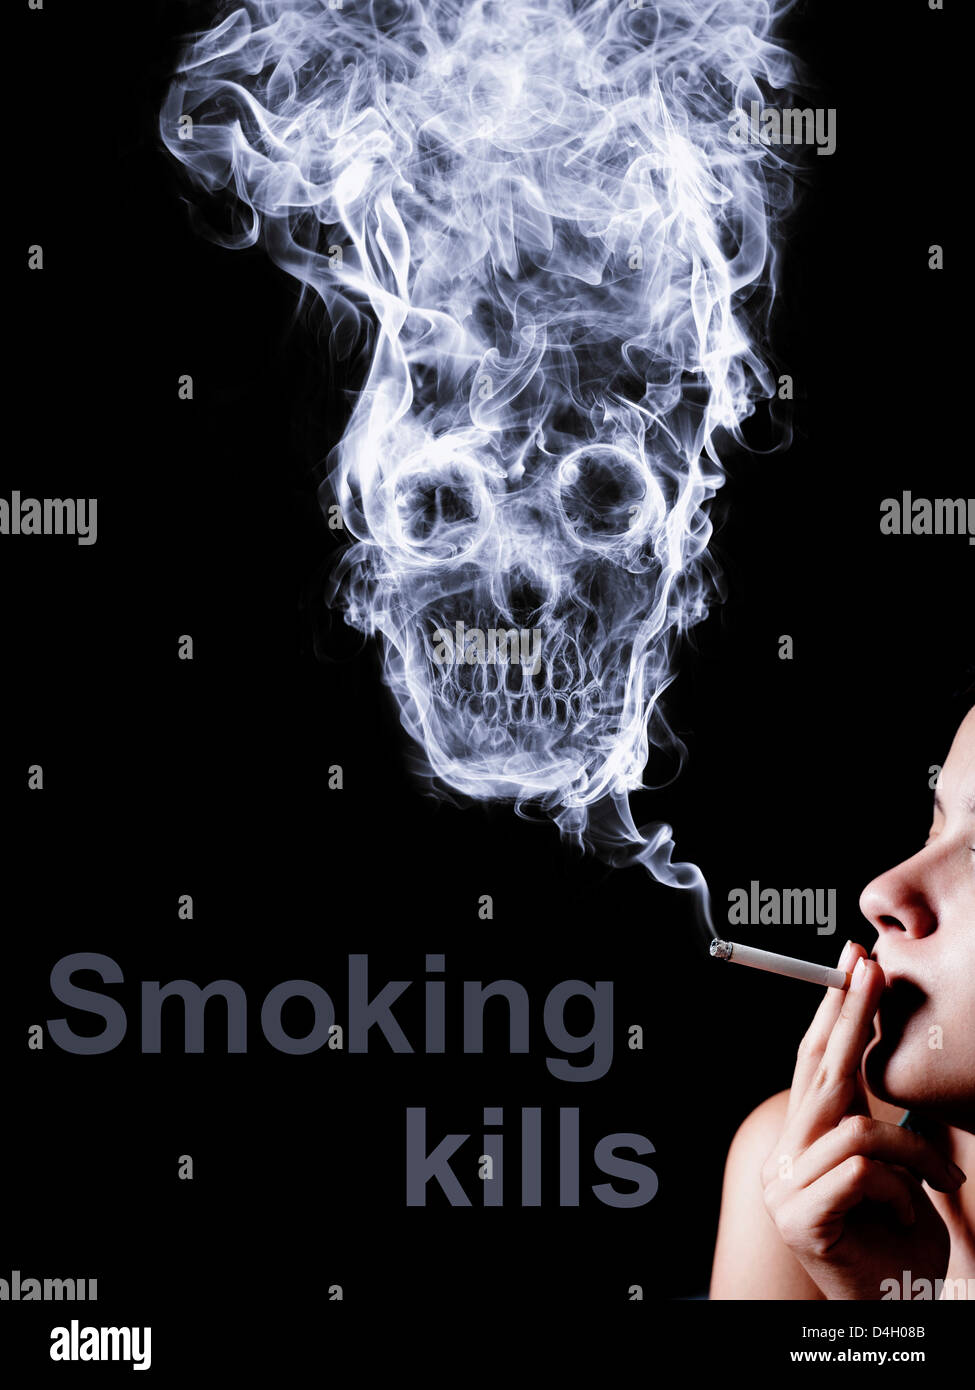 Femme fumant une cigarette. Formes fumée skull morts, comme un symbole des dangers du tabac pour la santé et d'une mort imminente. Banque D'Images